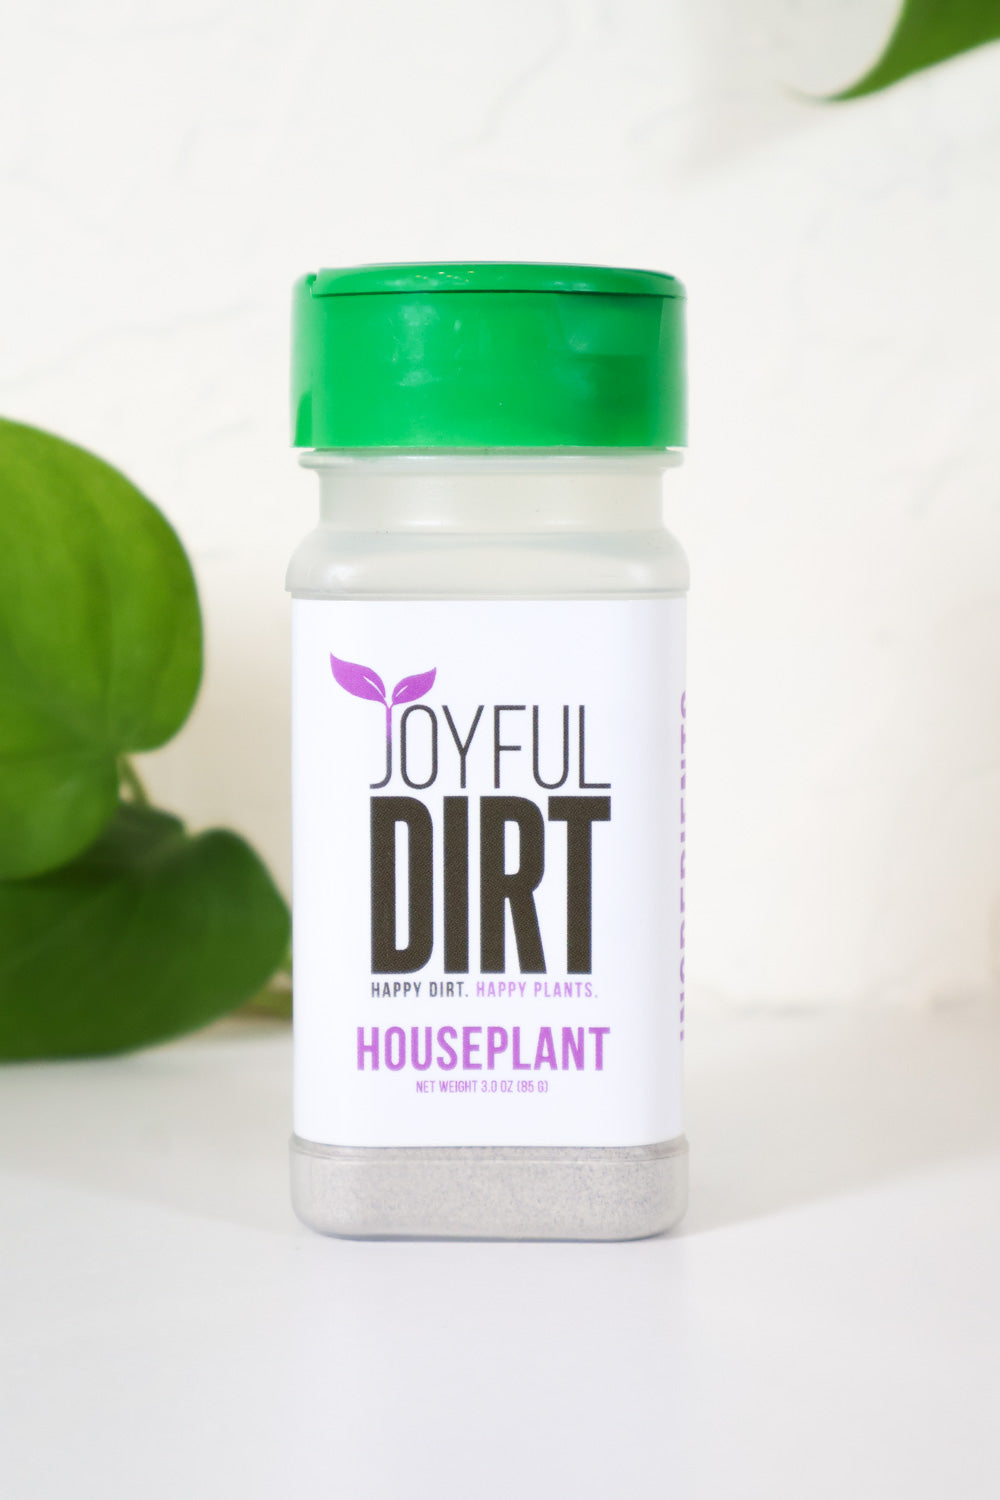 Joyful Dirt Houseplant Fertilizer